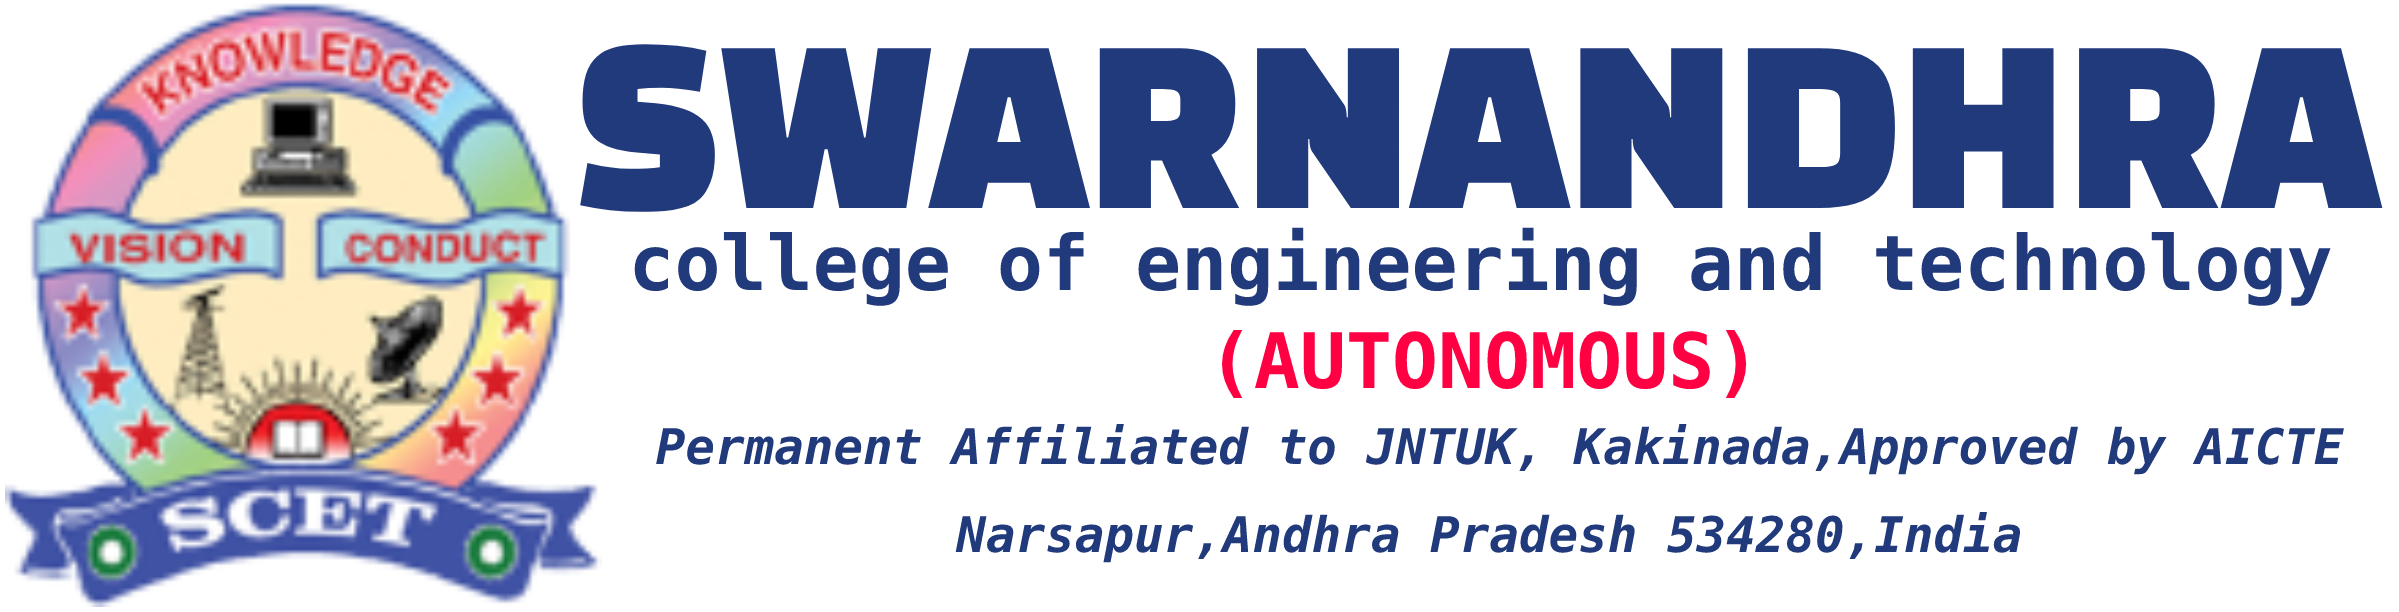 swaran andhra logo